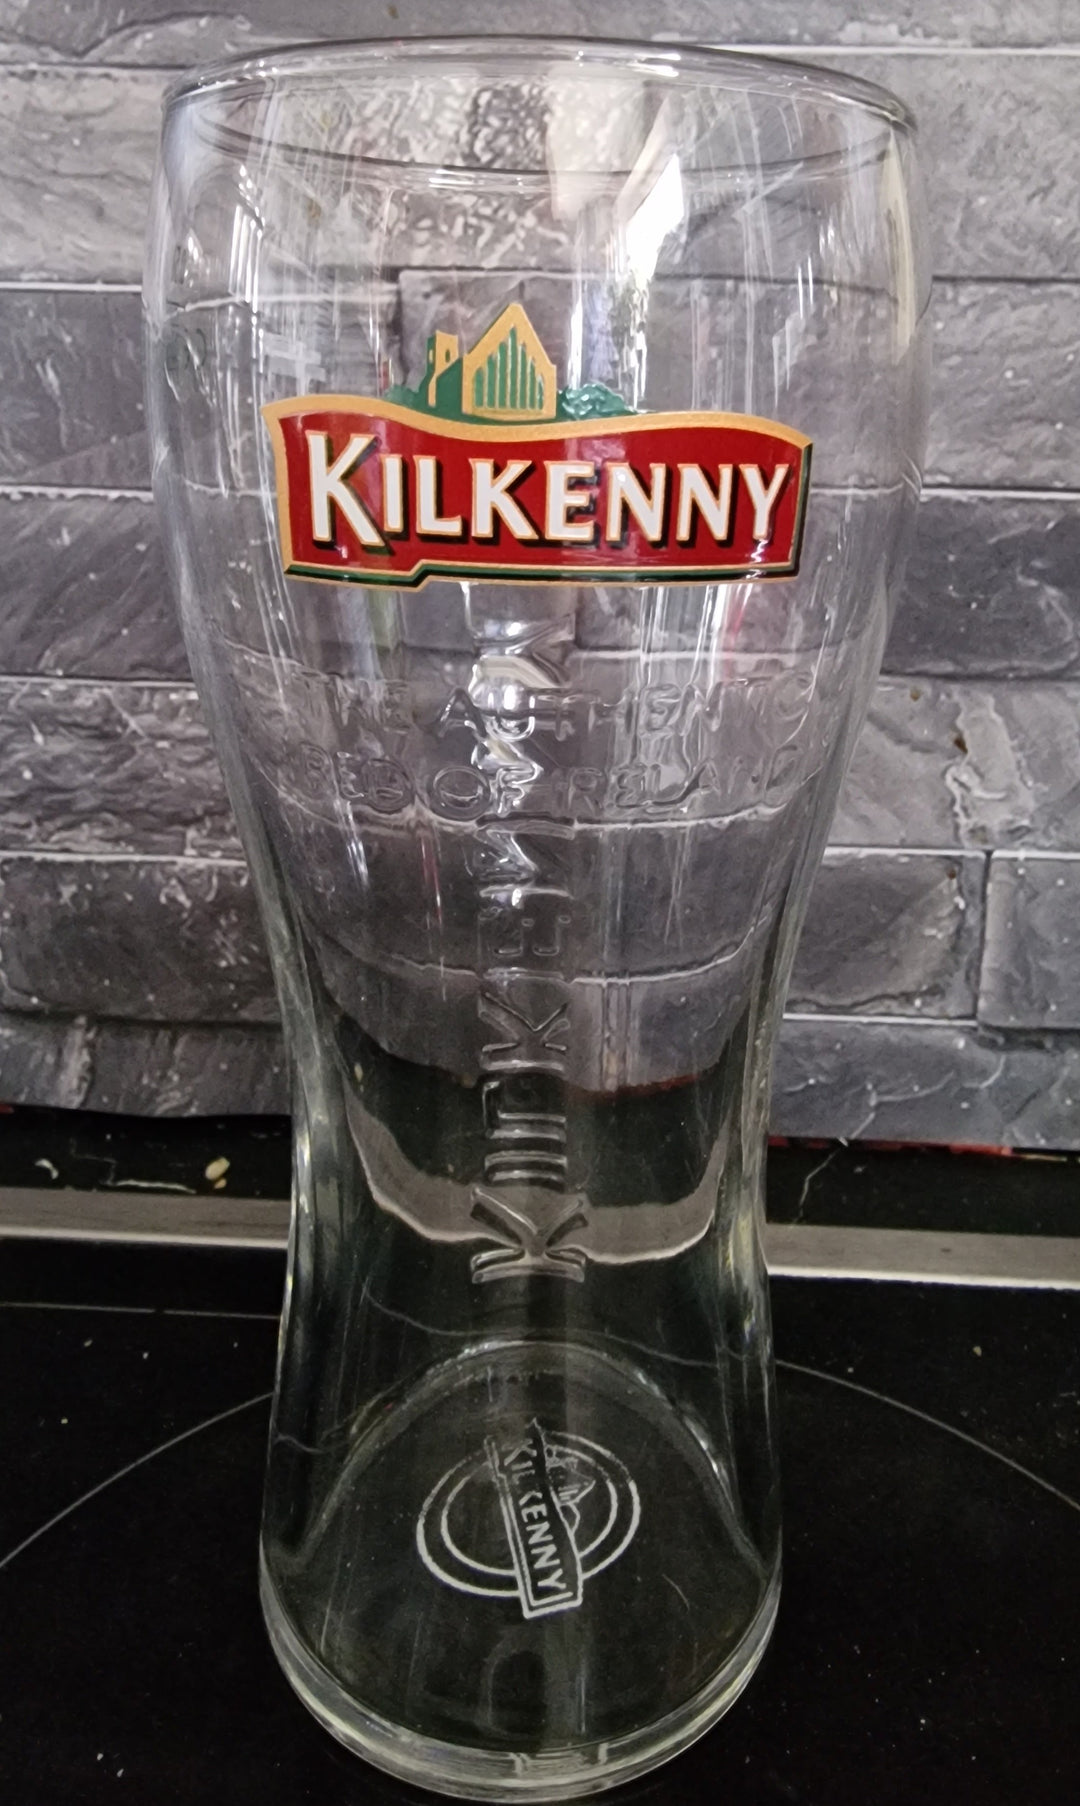 "Kilkenny  "- Pint-Glas  0,5 l"Kilkenny  "- Pint-Glas  0,5 l